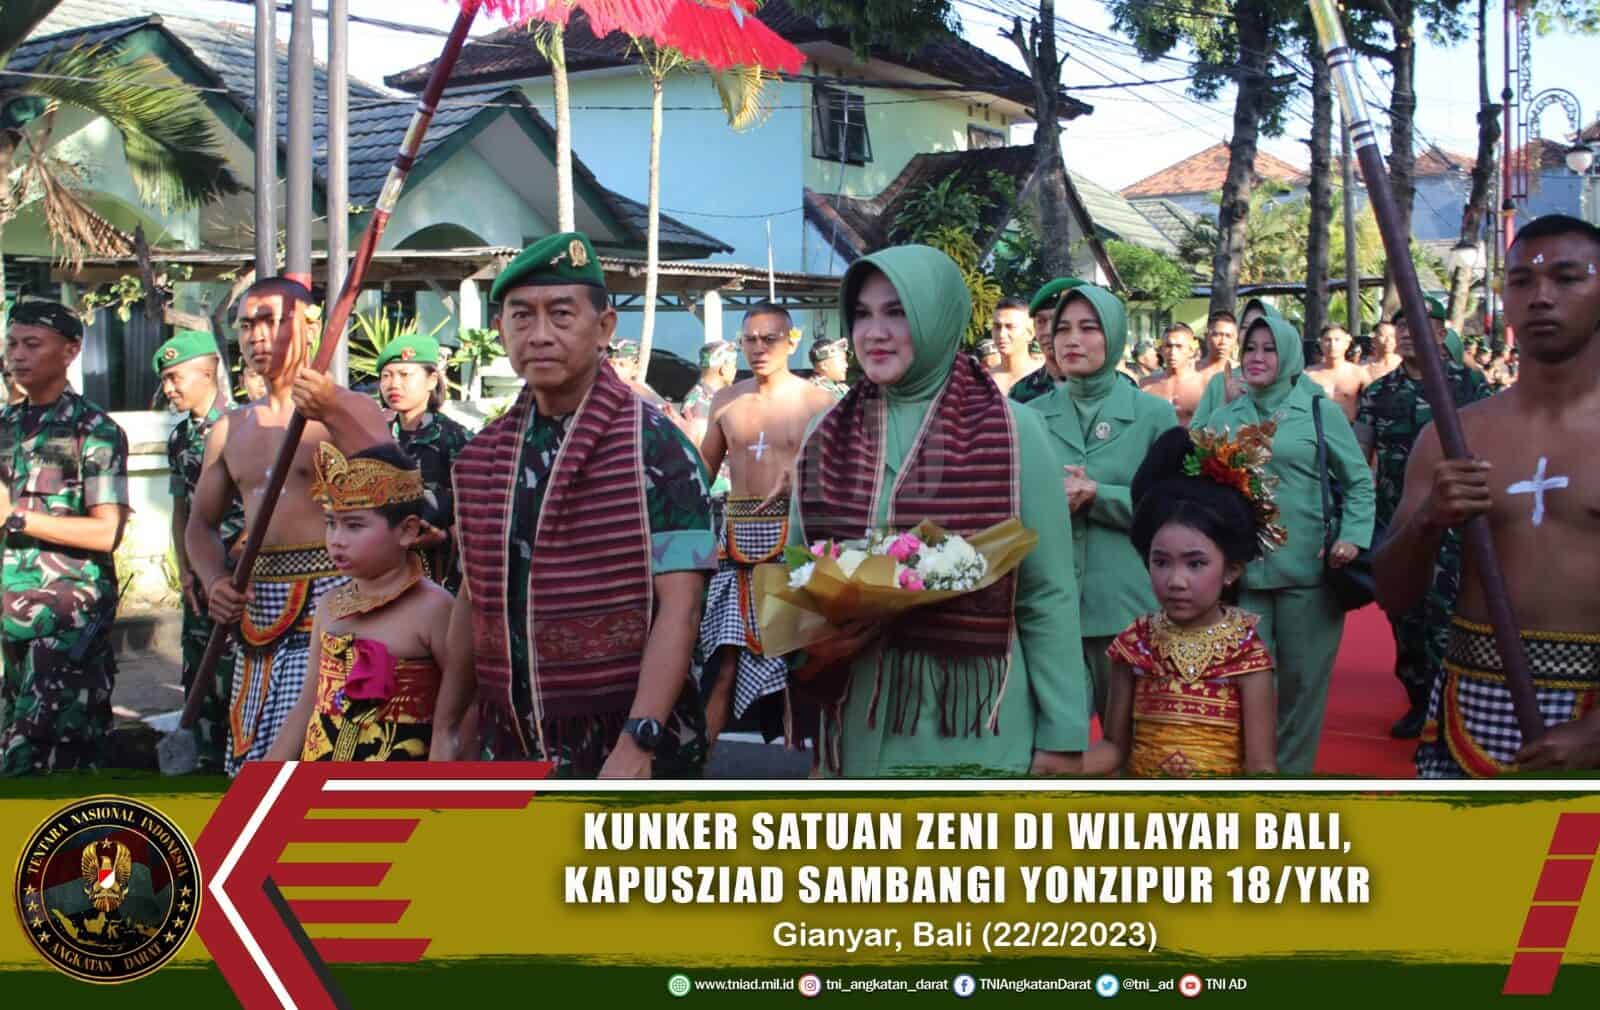 Kunker Satuan Zeni di Wilayah Bali, Kapusziad Sambangi Yonzipur 18/YKR